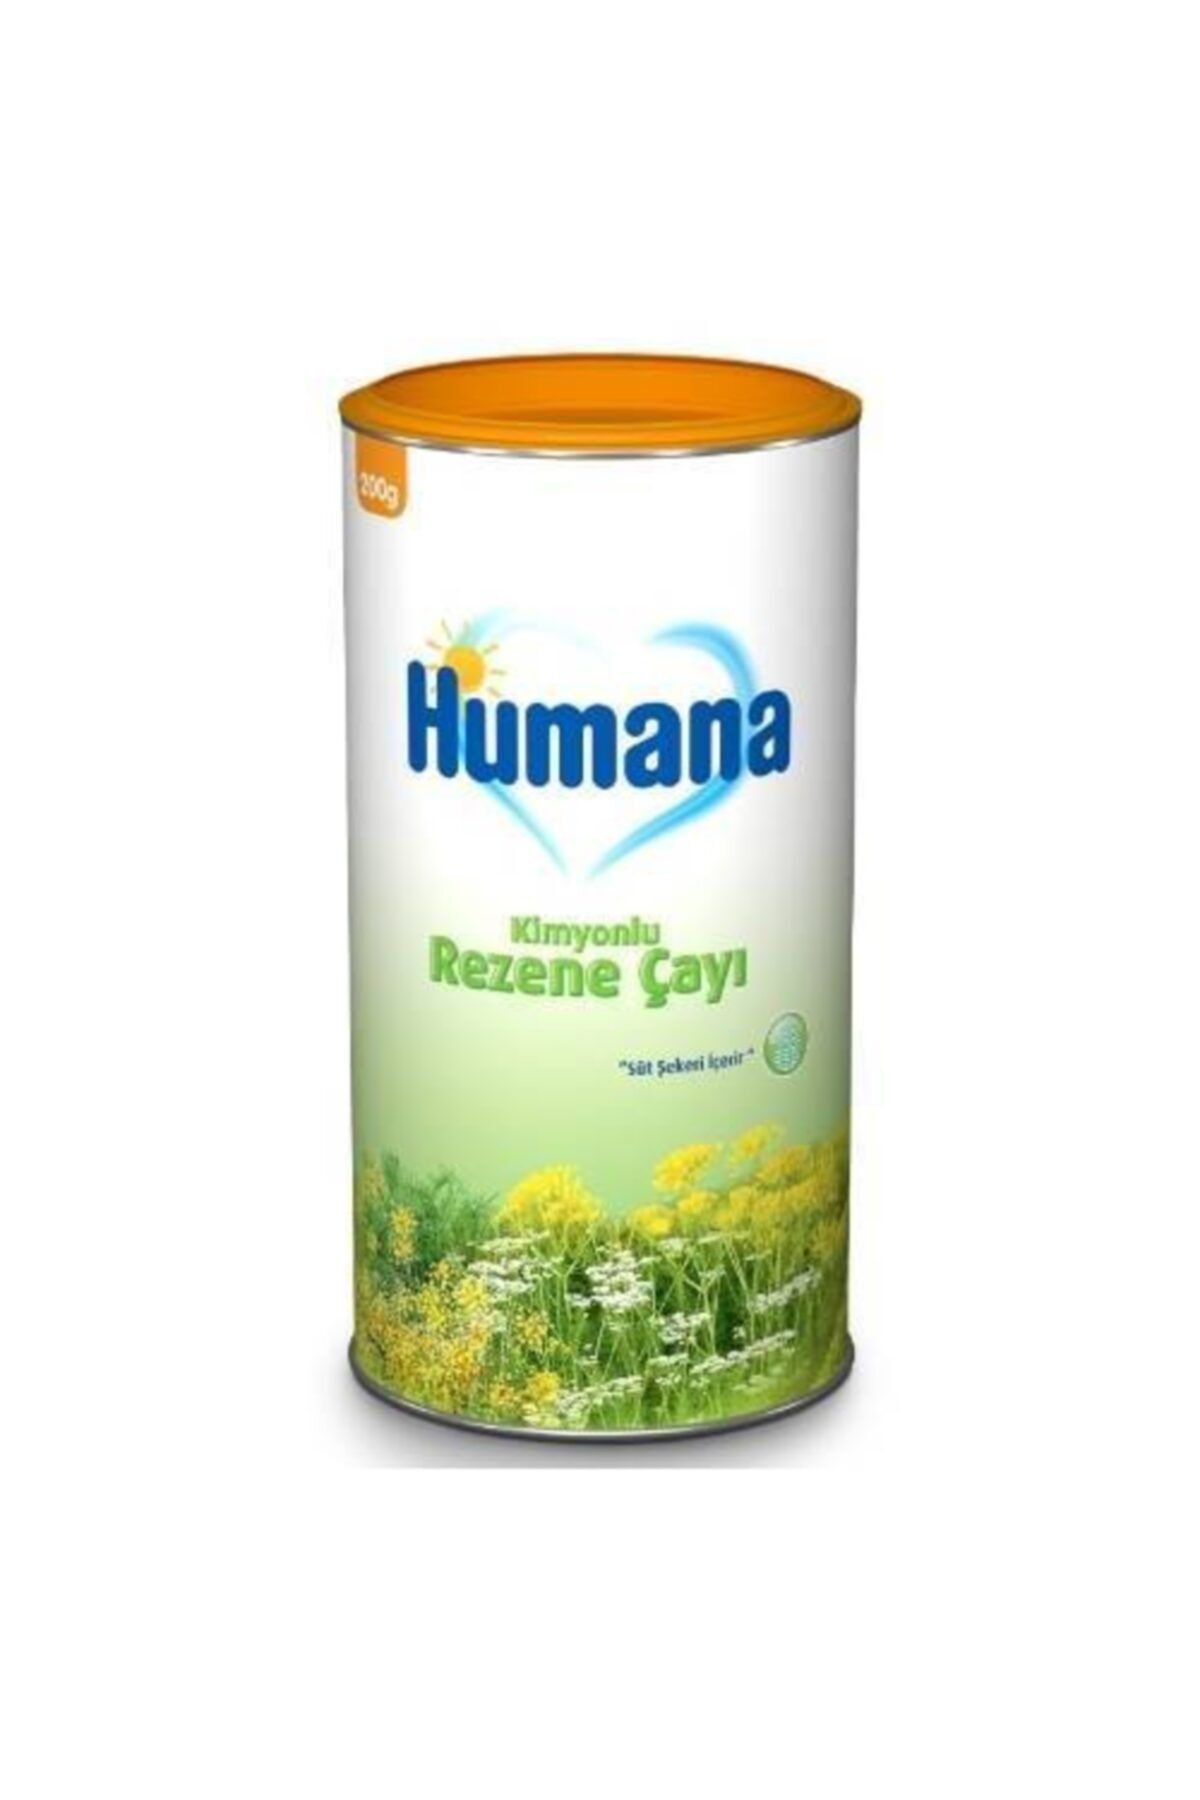 Humana Kimyonlu Rezene Bitki Çayı 200 gr